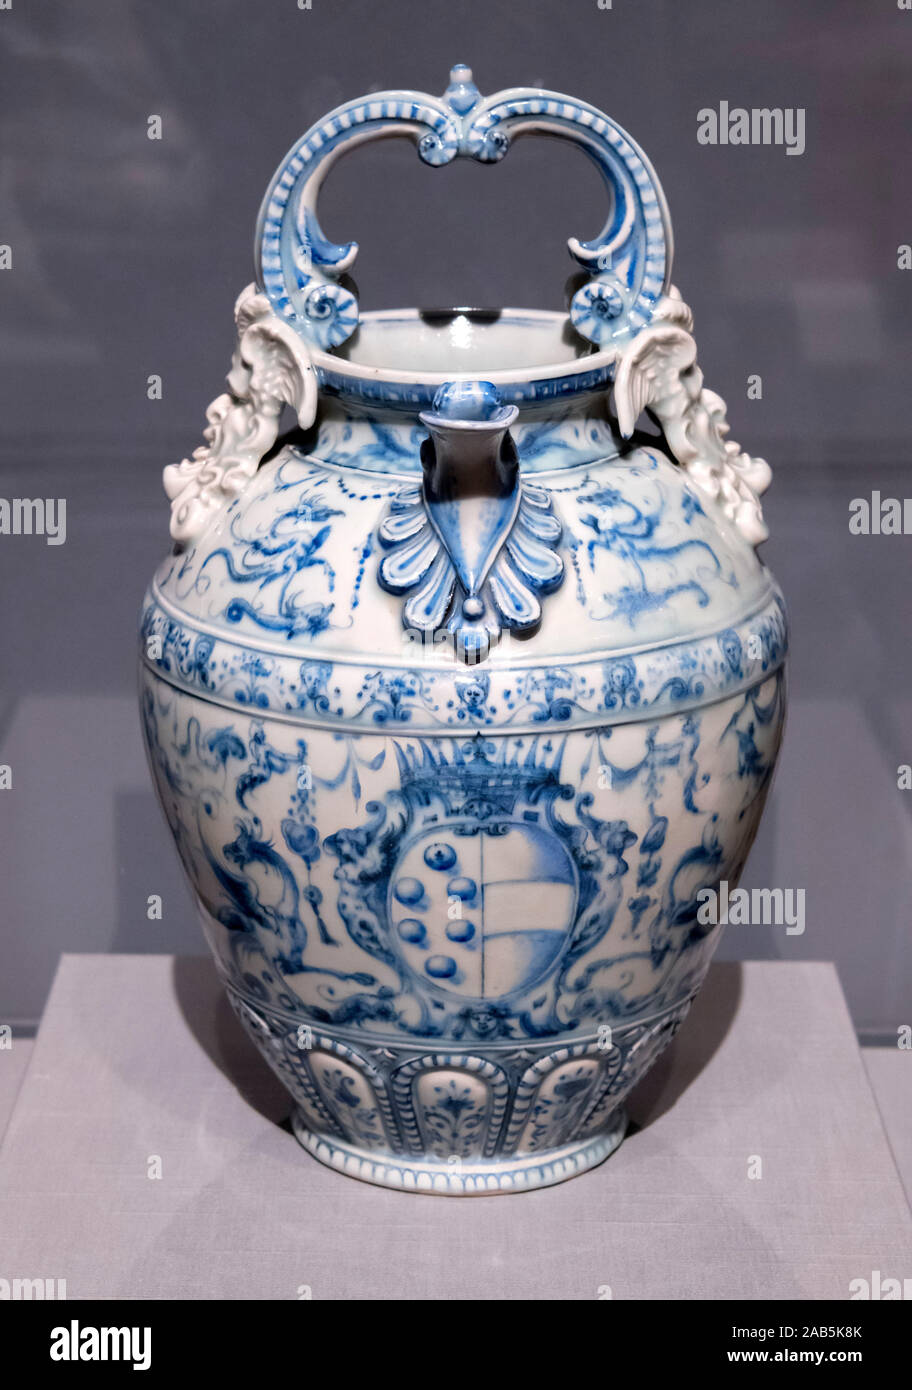 Porzellan Ewer (brocca), Medici Manufaktur zwischen 1575 und 1578, weiche Paste Porzellan mit den blauen Unterglasur und Mangan Dekoration. Der ewer ist einer der ersten Europäischen aus Porzellan Gegenstände. Stockfoto